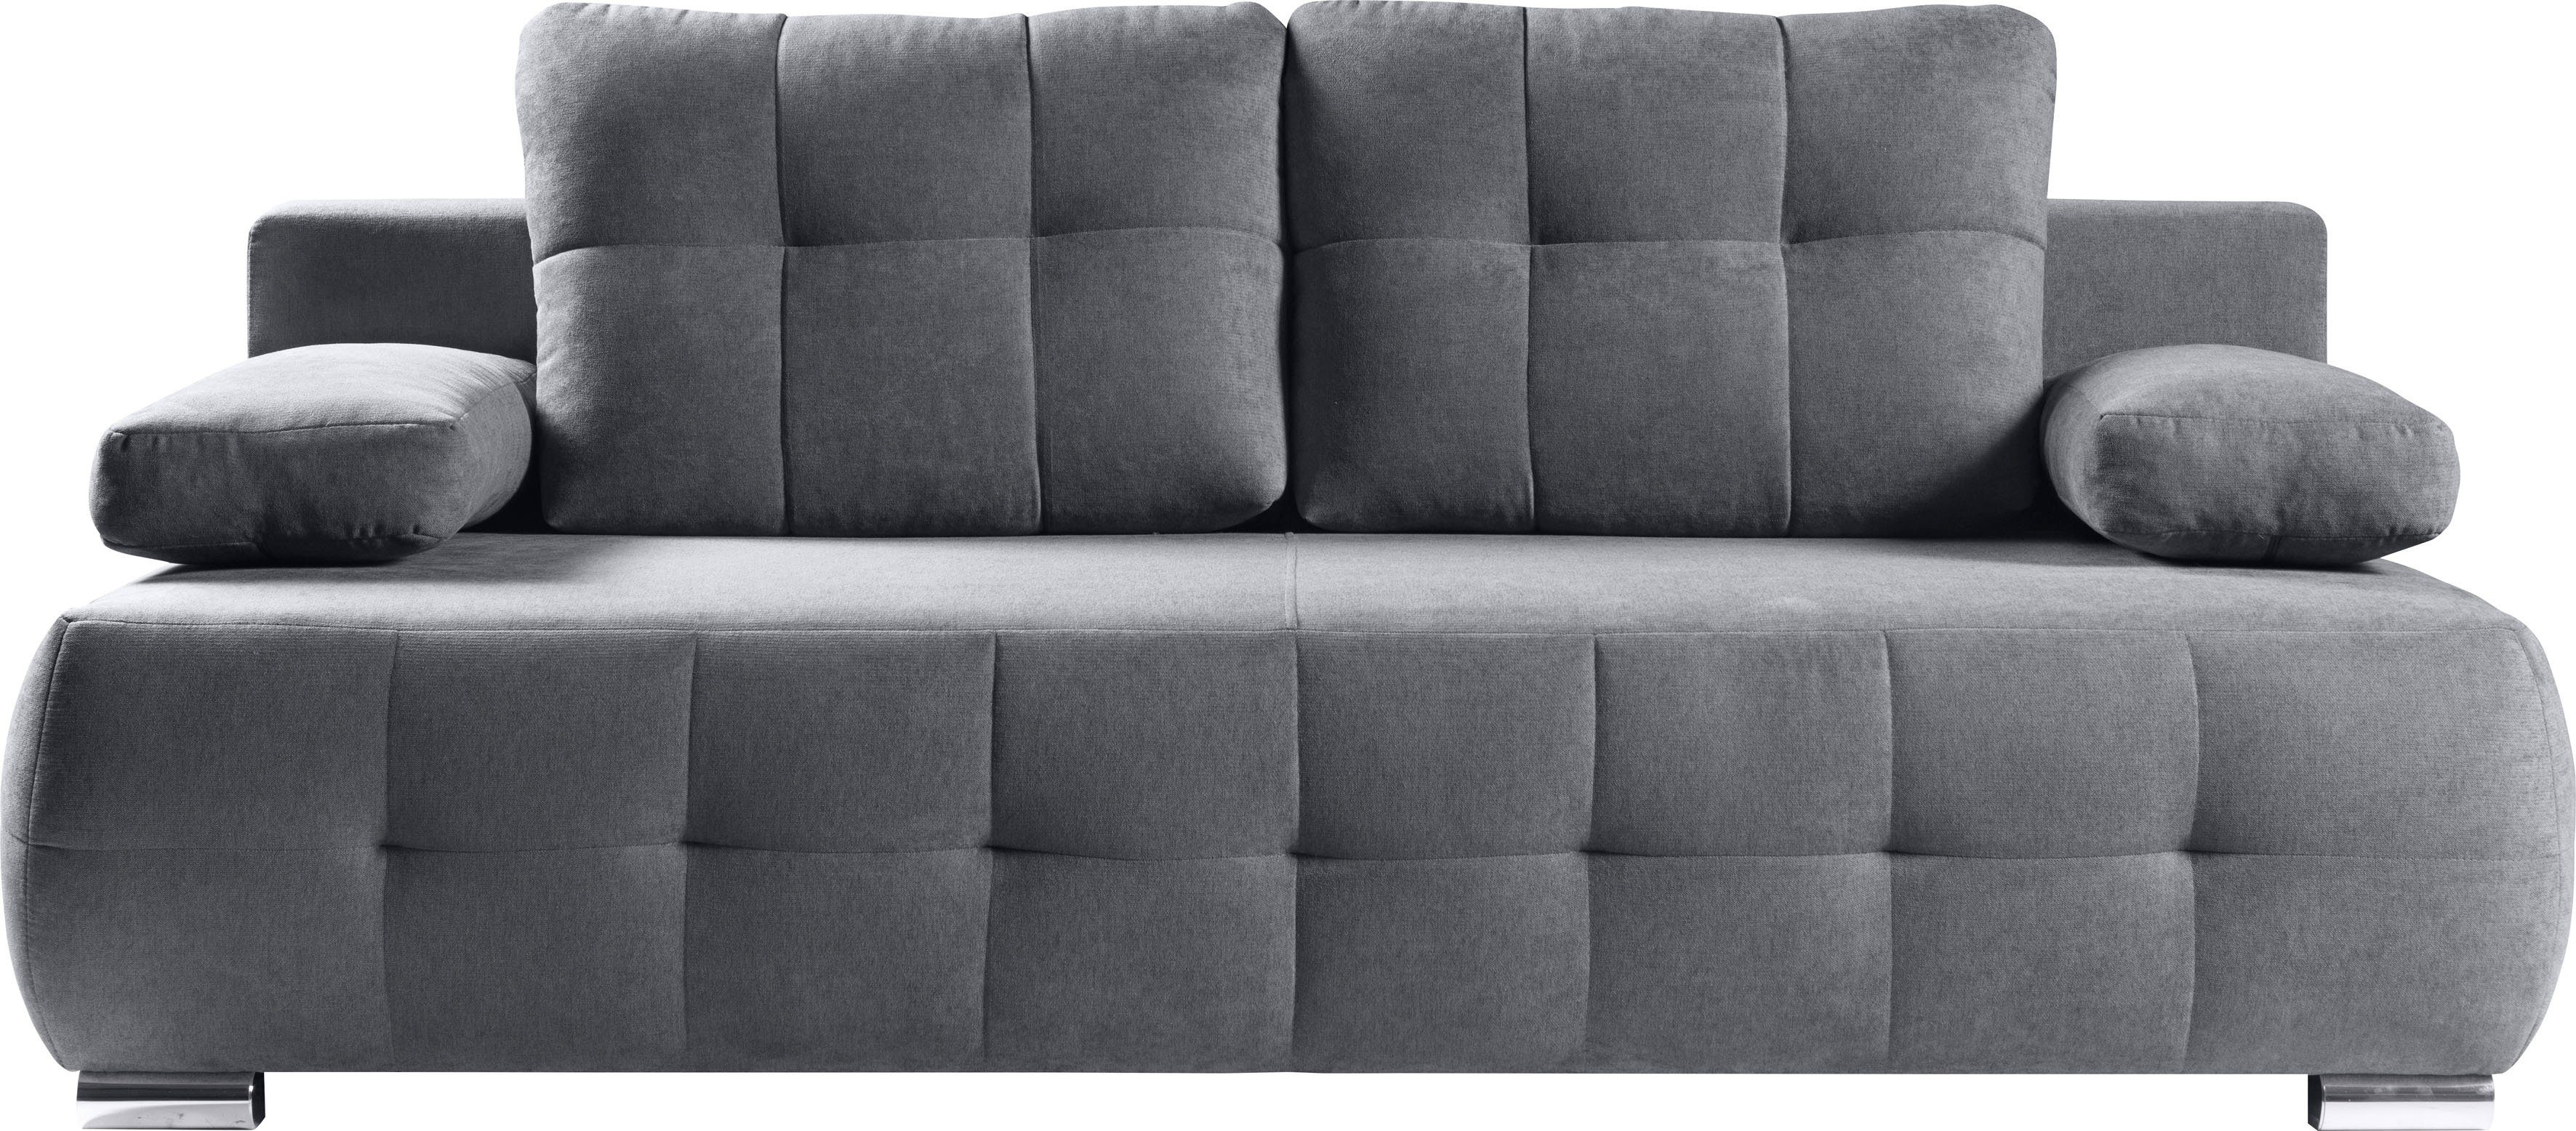 2-Sitzer grau Schlafcouch und Bettkasten | mit Schlafsofa Federkern WERK2 & Indigo, grau | grau Sofa